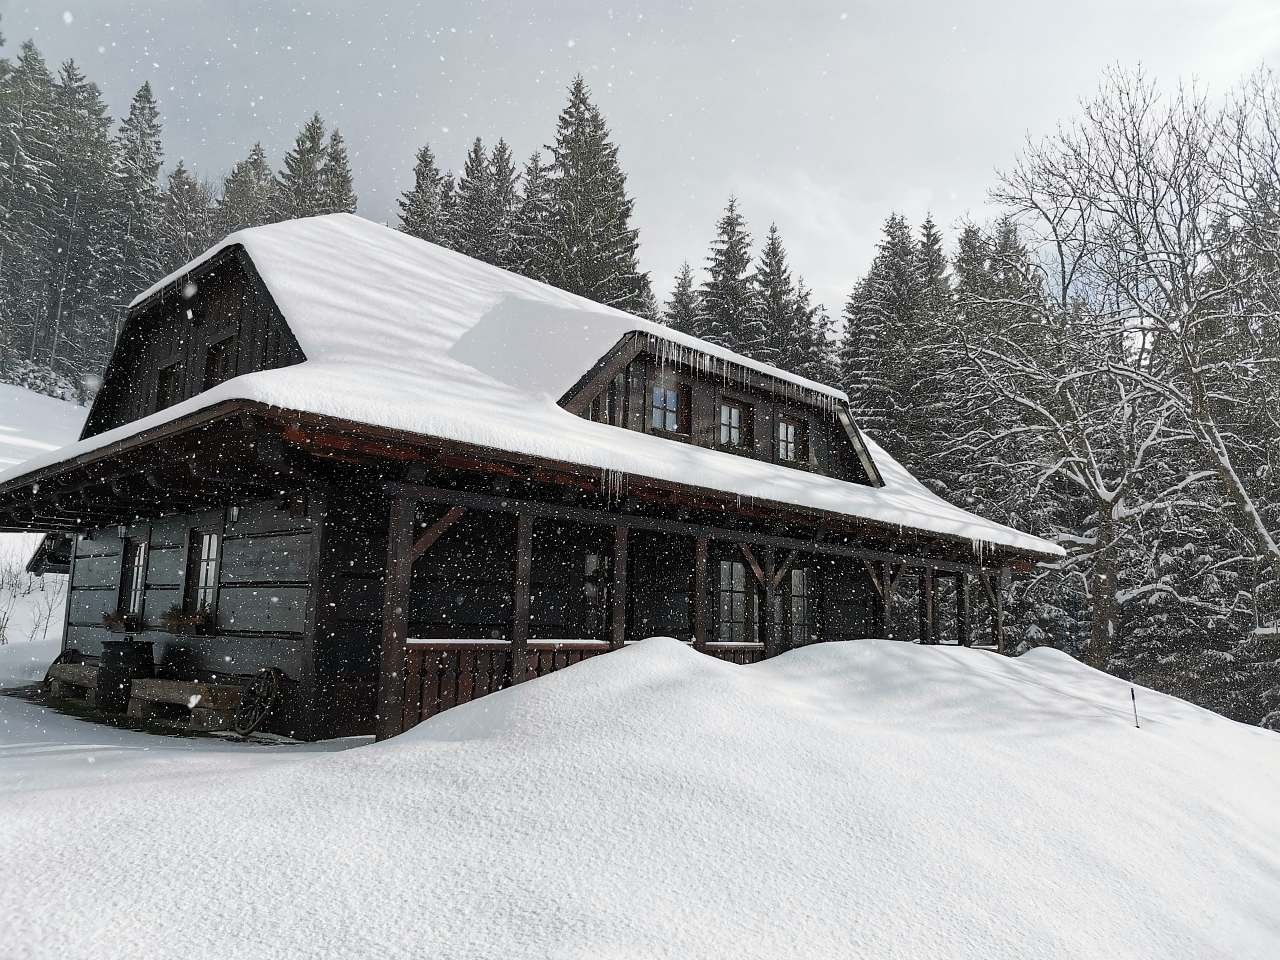 Zima u chaty  , když sněží .